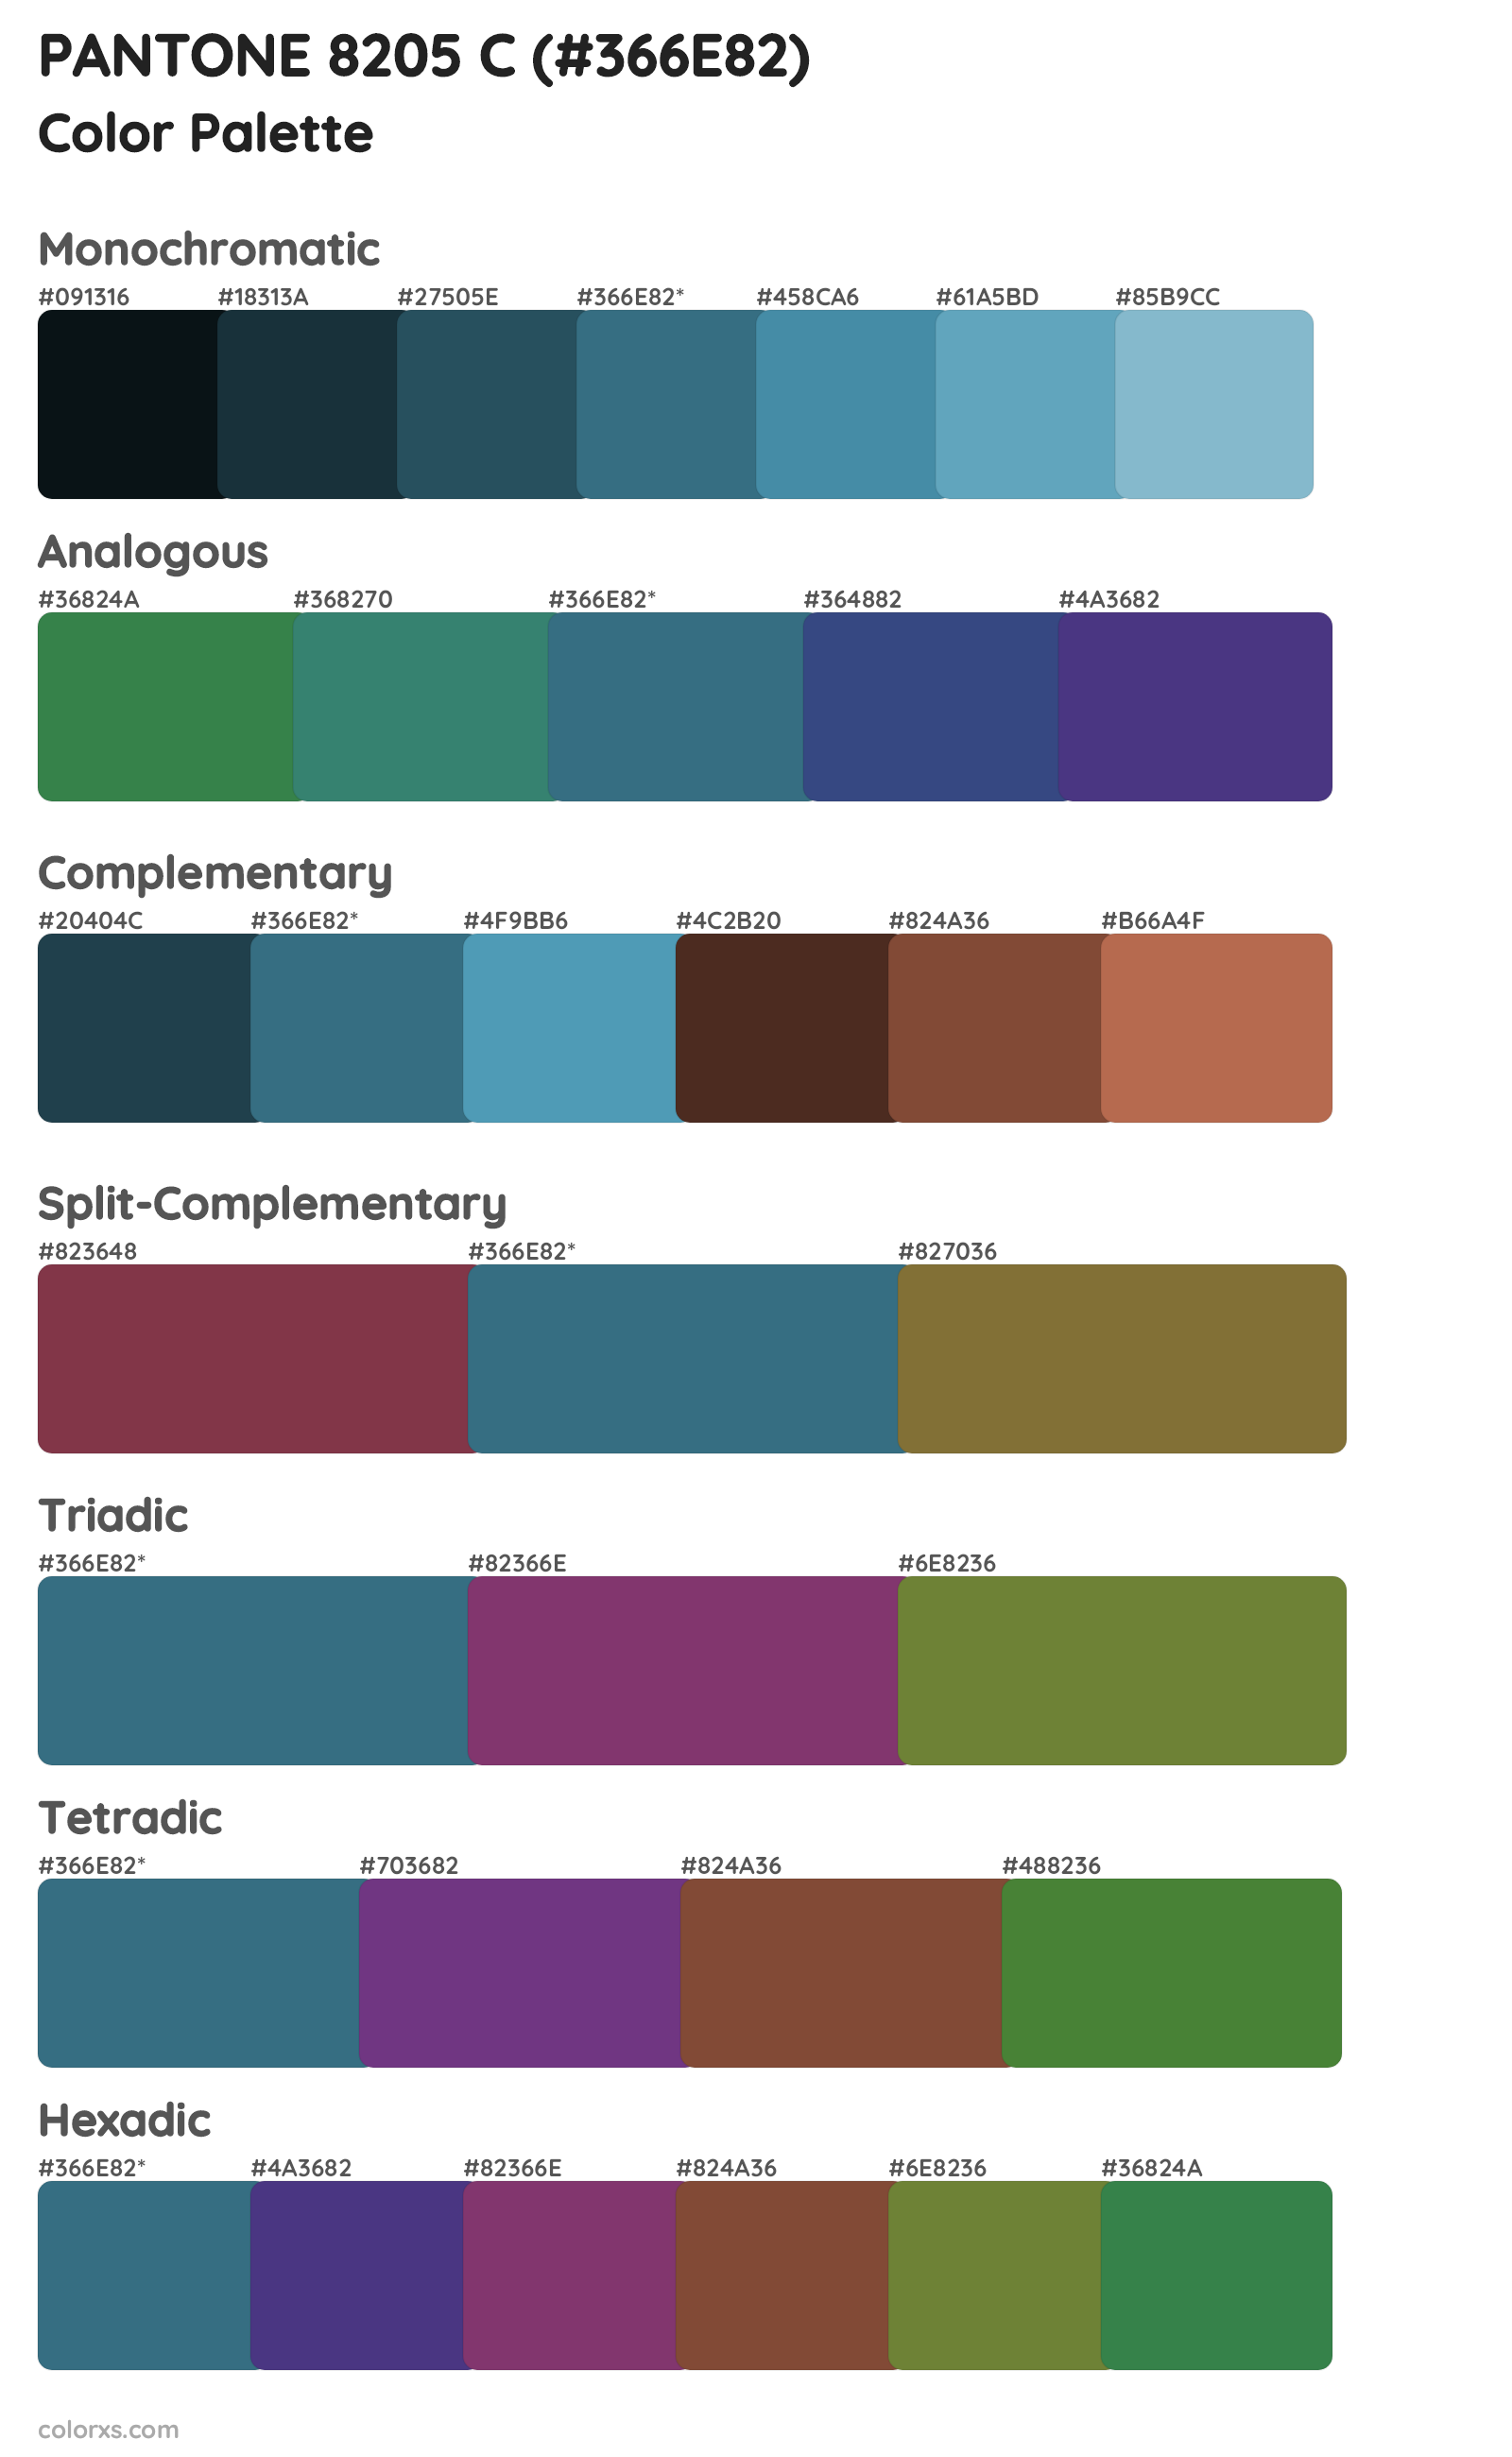 PANTONE 8205 C Color Scheme Palettes